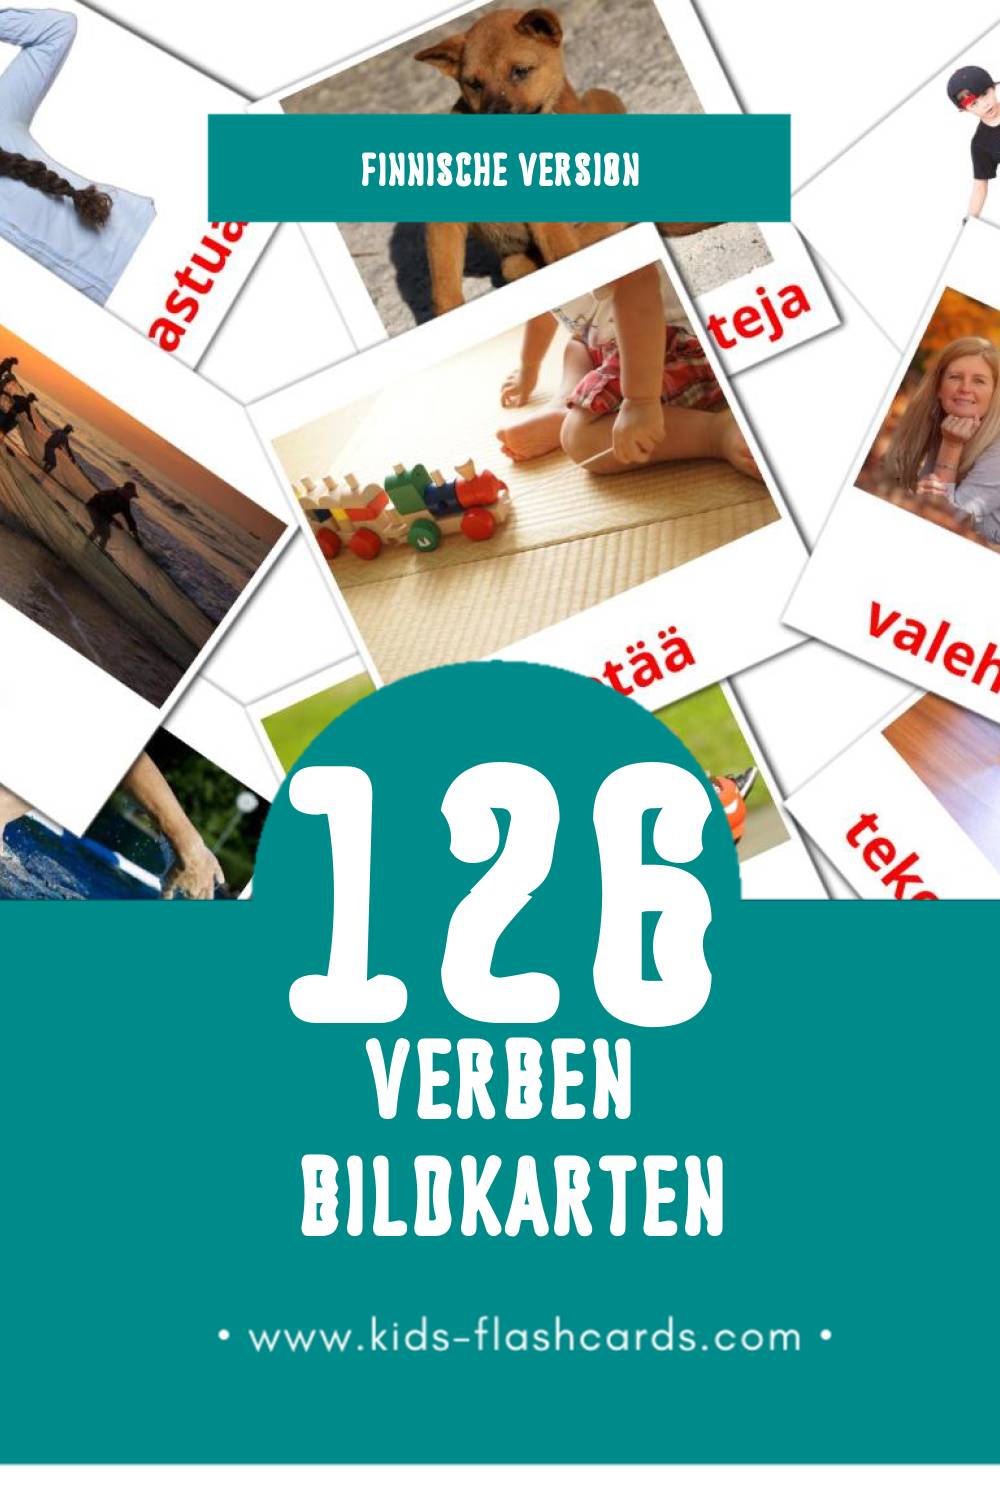 Visual Verbit Flashcards für Kleinkinder (126 Karten in Finnisch)